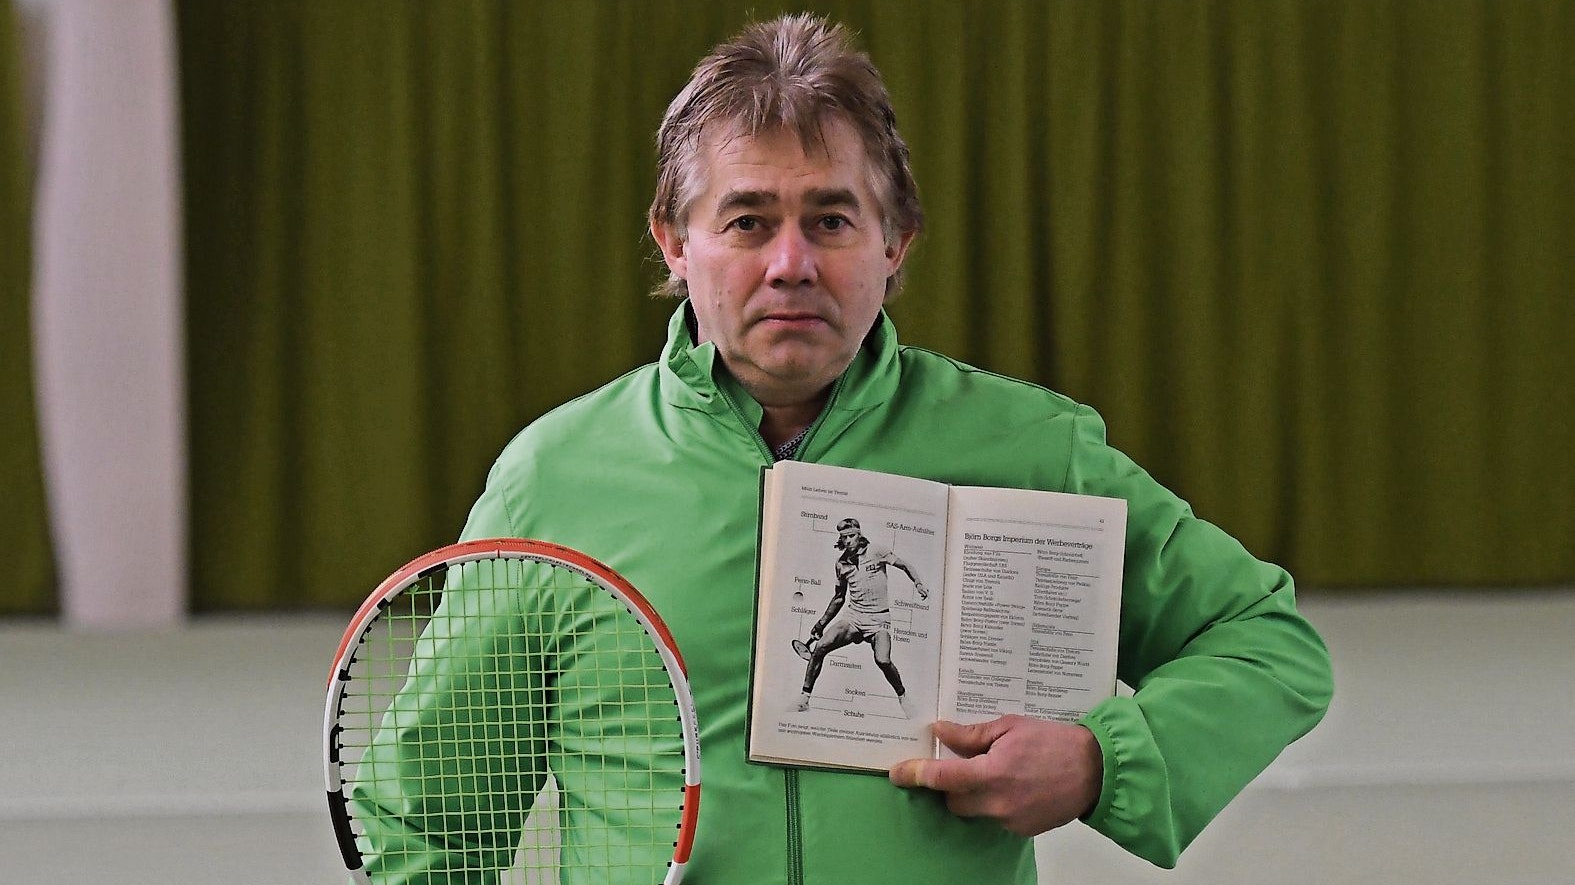 Björn Borg als Lehrmeister: Ein Buch des fünffachen Wimbledonsiegers diente Bernd Ferneding als Grundlage für die ersten Tennis-Trainingseinheiten. Foto: Wulfers